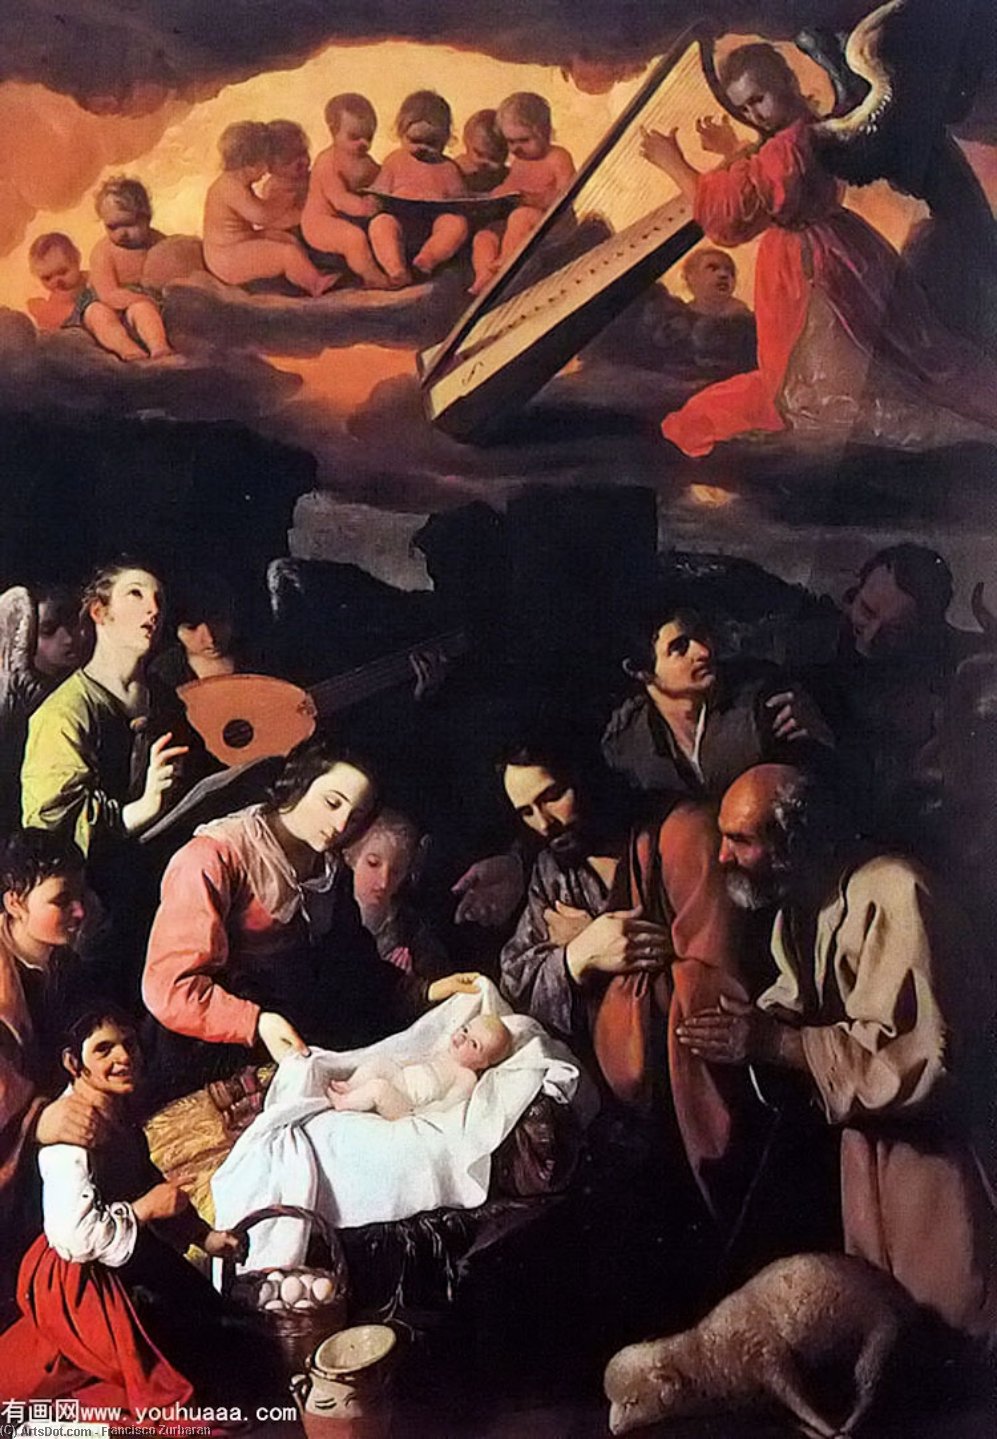 WikiOO.org - Enciclopedia of Fine Arts - Pictura, lucrări de artă Francisco Zurbaran - The Adoration of the Shepherds, oil on can